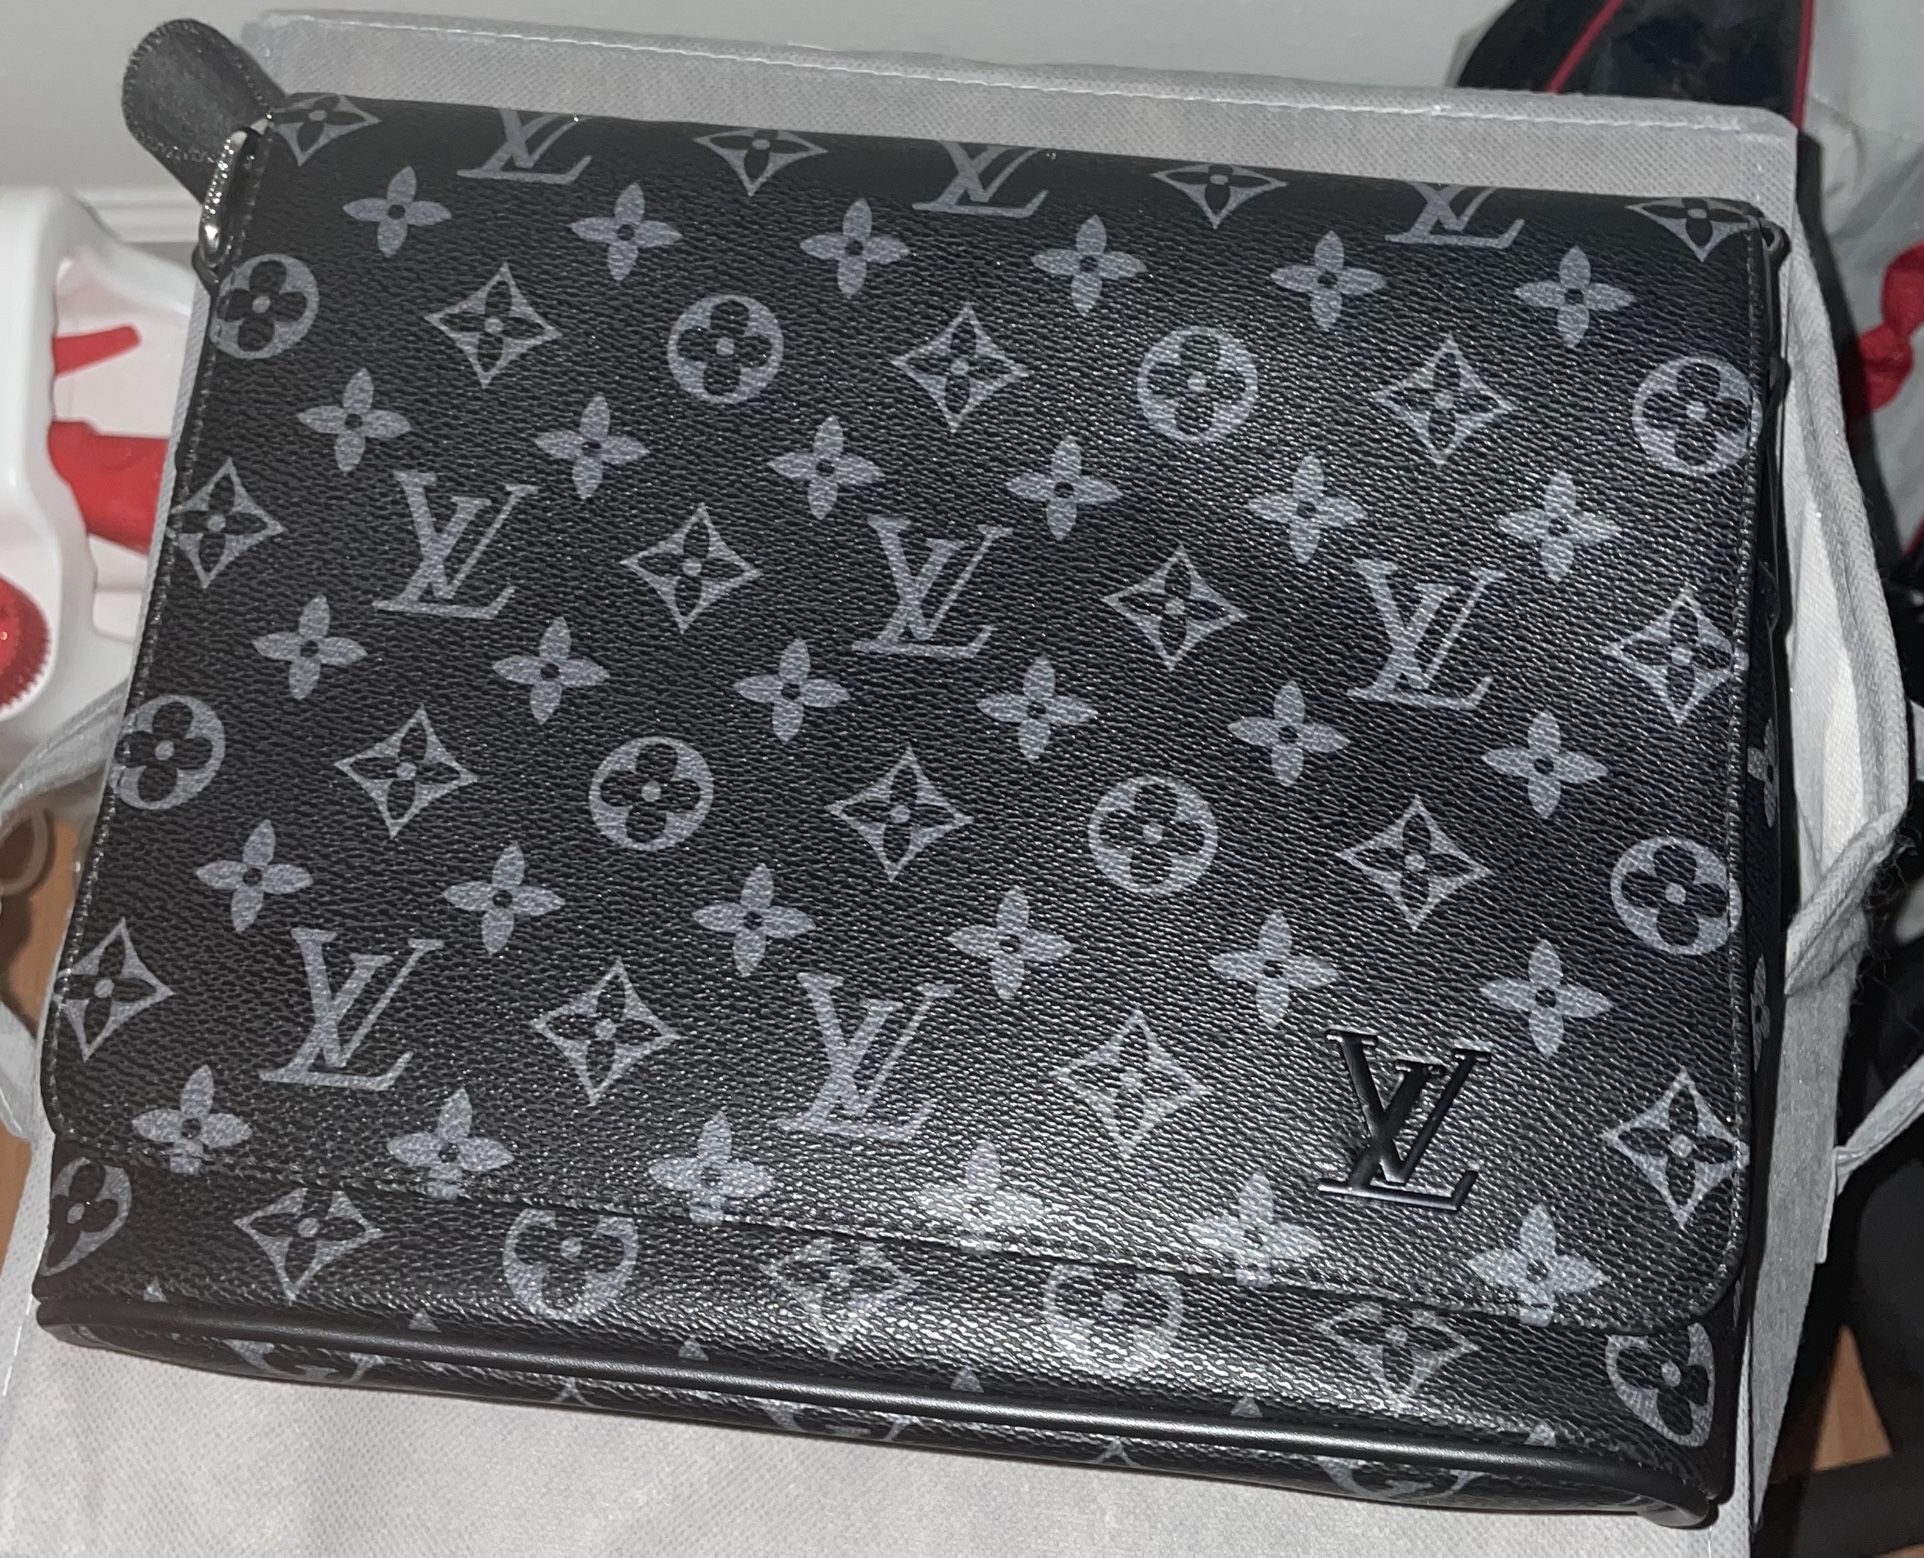 Louis Vuitton Checkerboard Crossbody men messenger bag for Sale in Atlanta,  GA - OfferUp